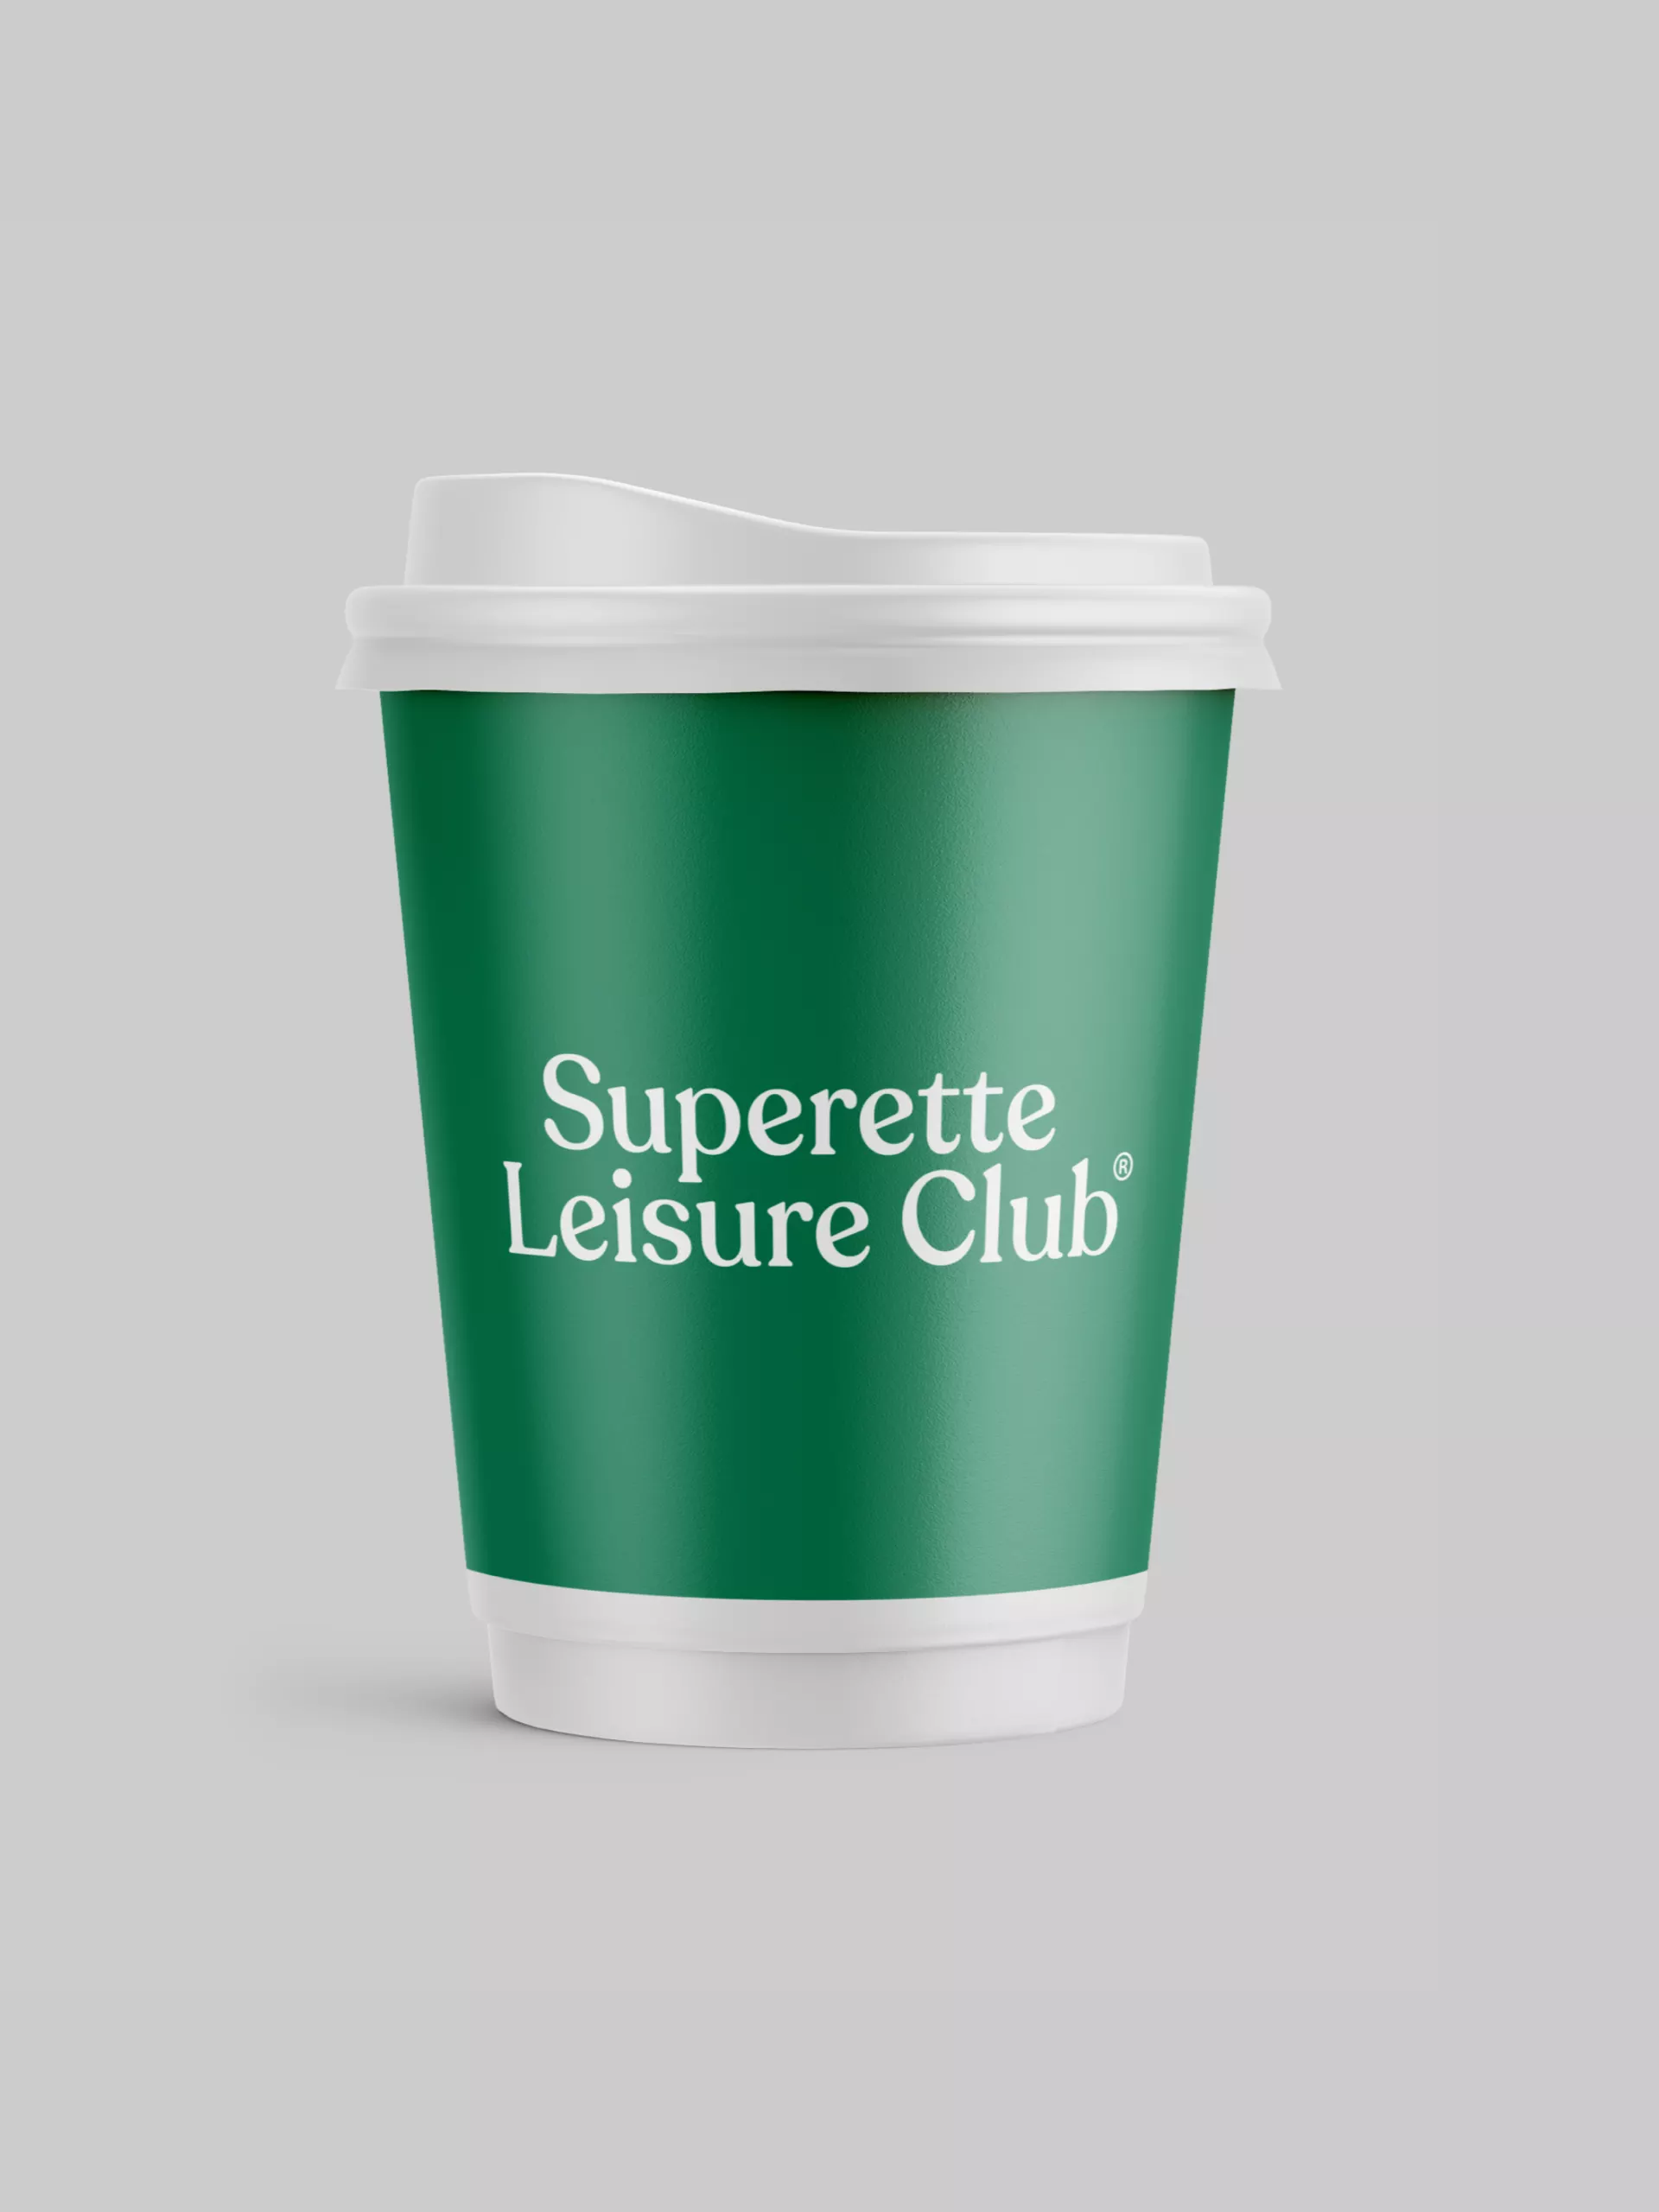 superette-leisure-club-kanook-studio5